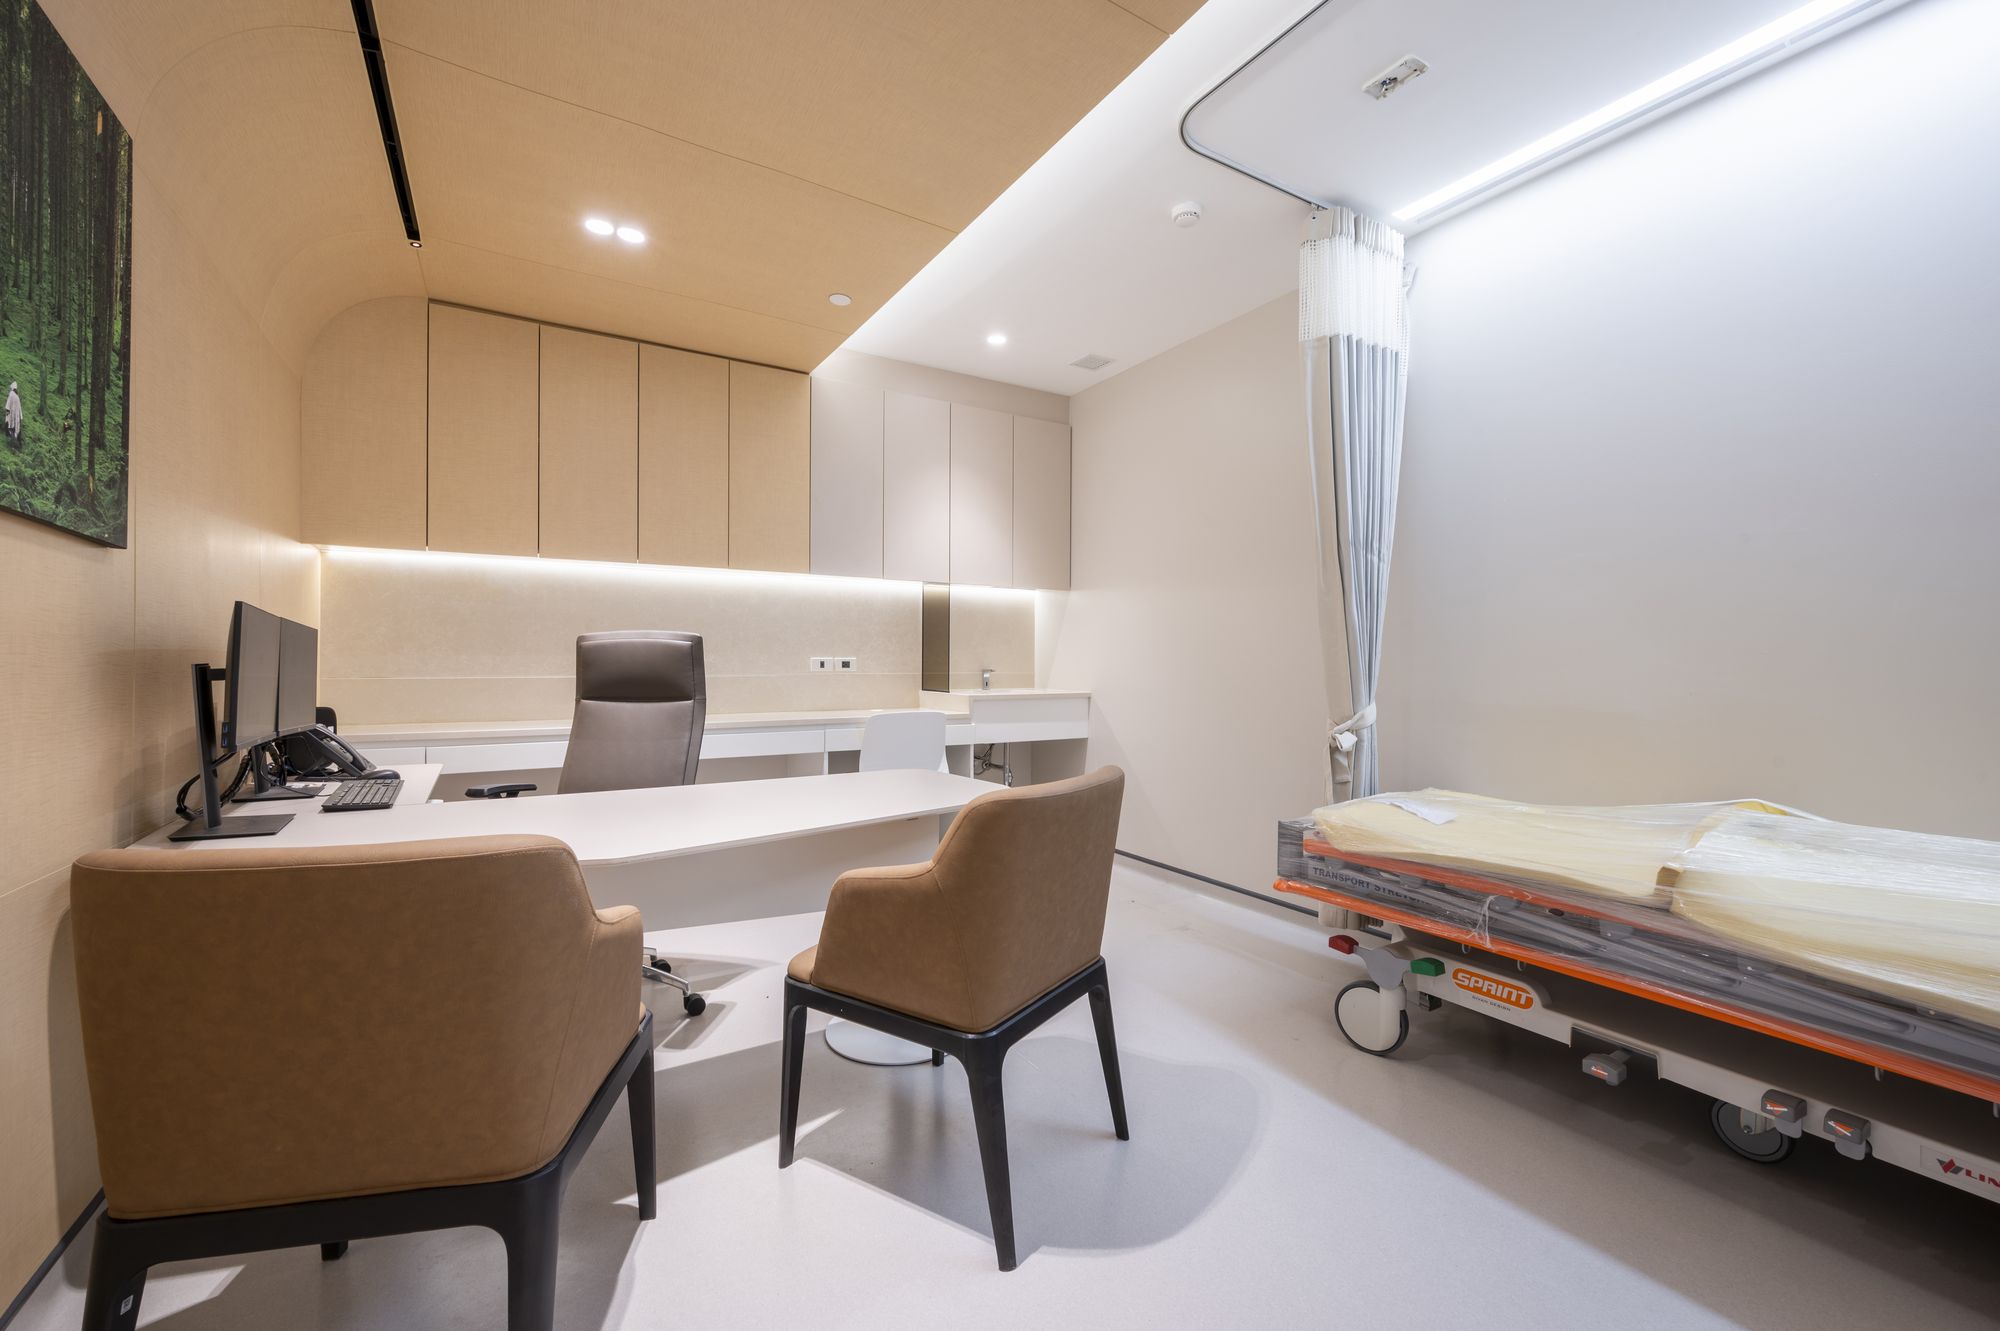 图片[9]|Wattanosoth医院-肿瘤医学中心|ART-Arrakis | 建筑室内设计的创新与灵感